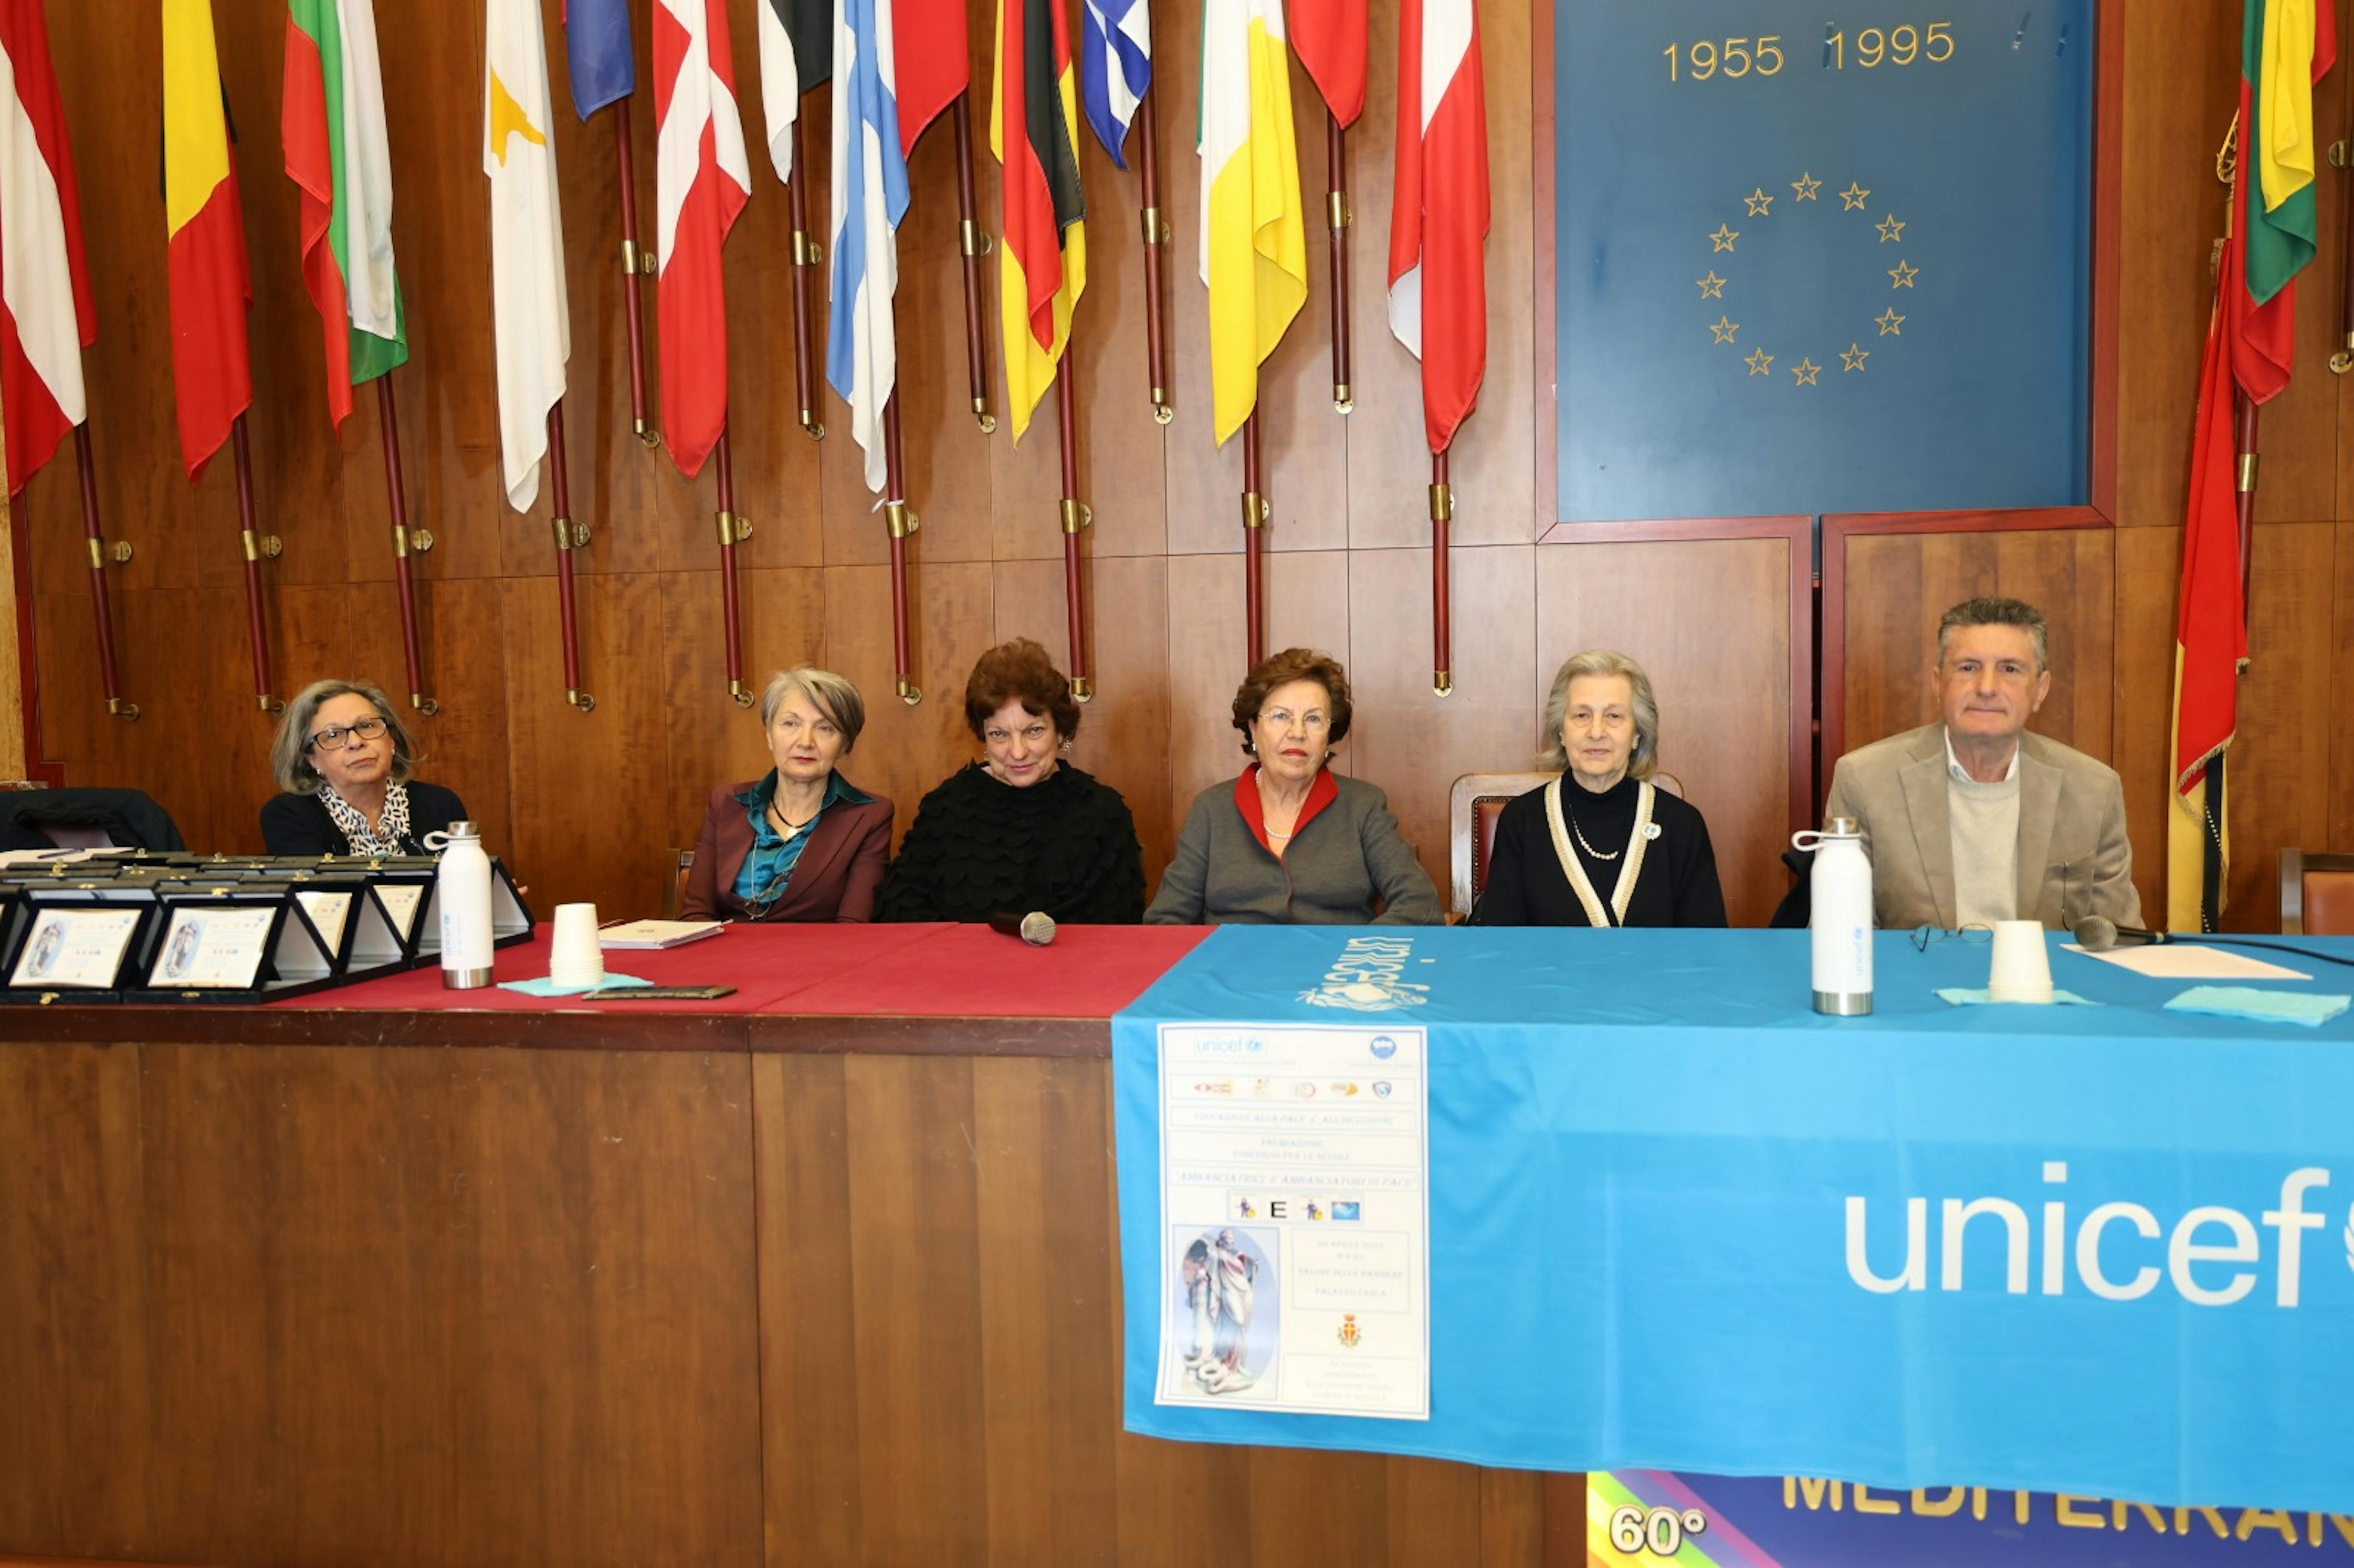 Le presidenti UNICEF, OPS e i commissari al salone delle bandiere di Palazzo Zanca